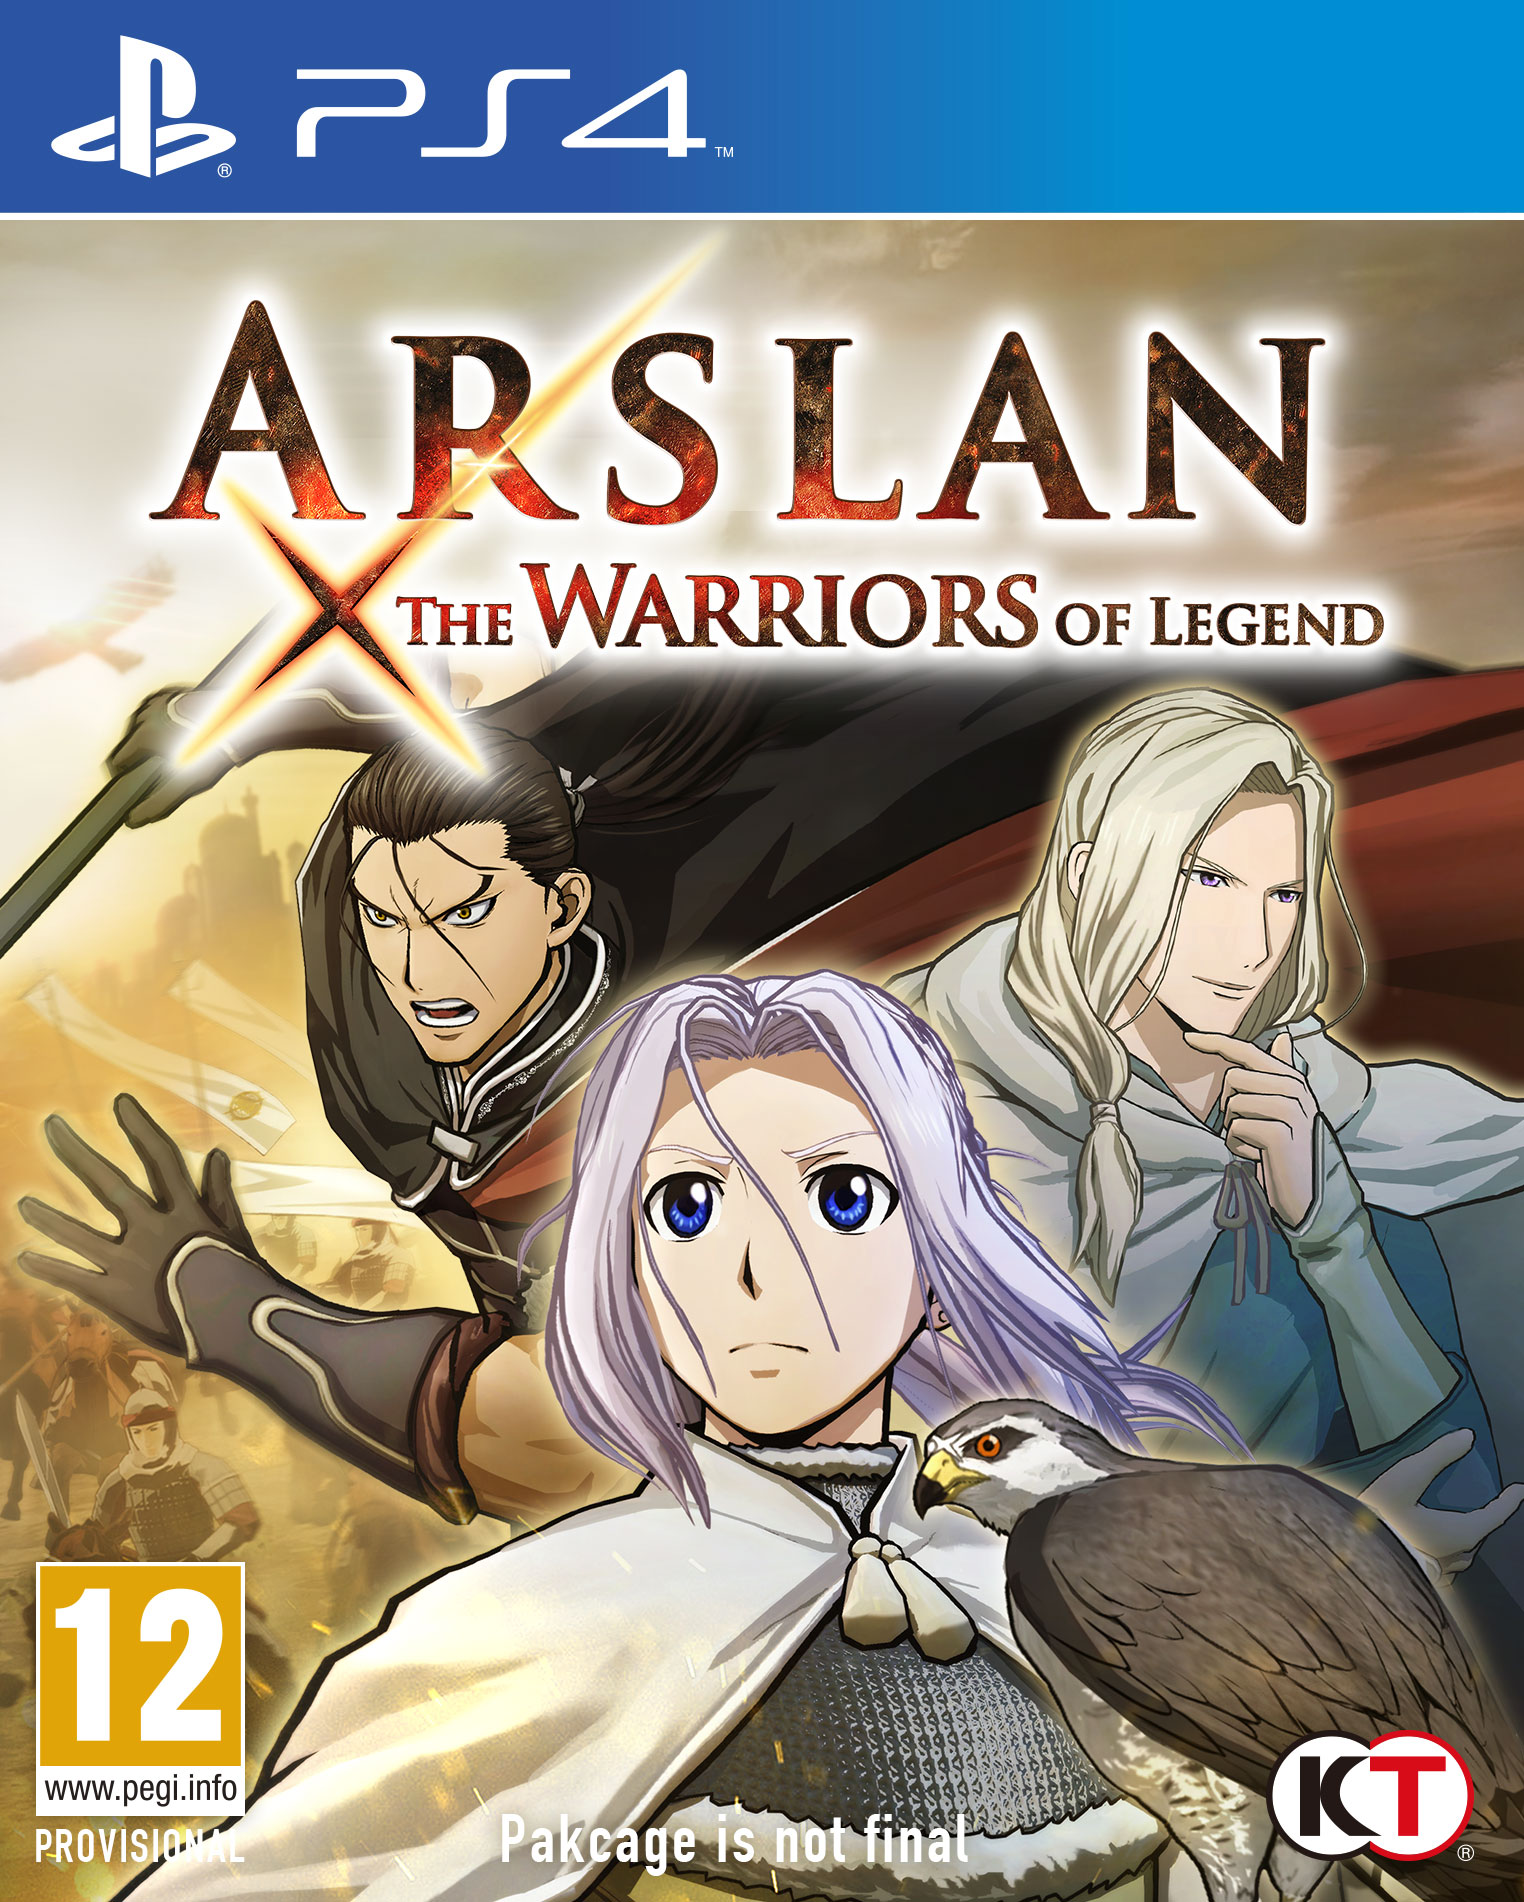 Arslan : The Warriors of Legend